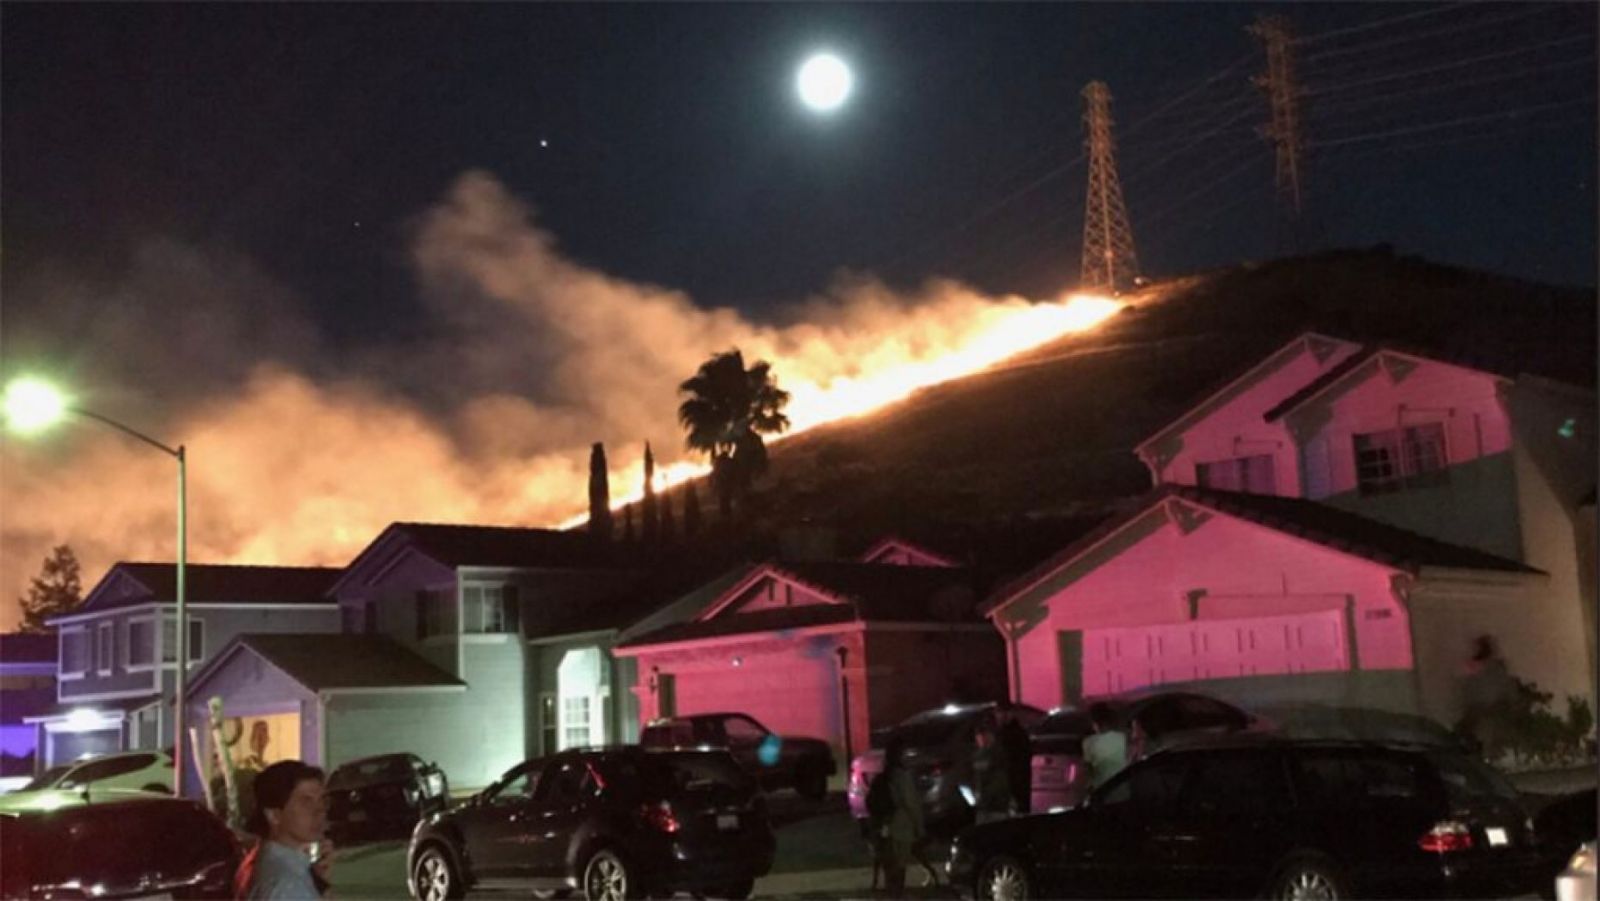 Лесные пожары бушуют в США, обнародована аэросъемка масштабов стихии